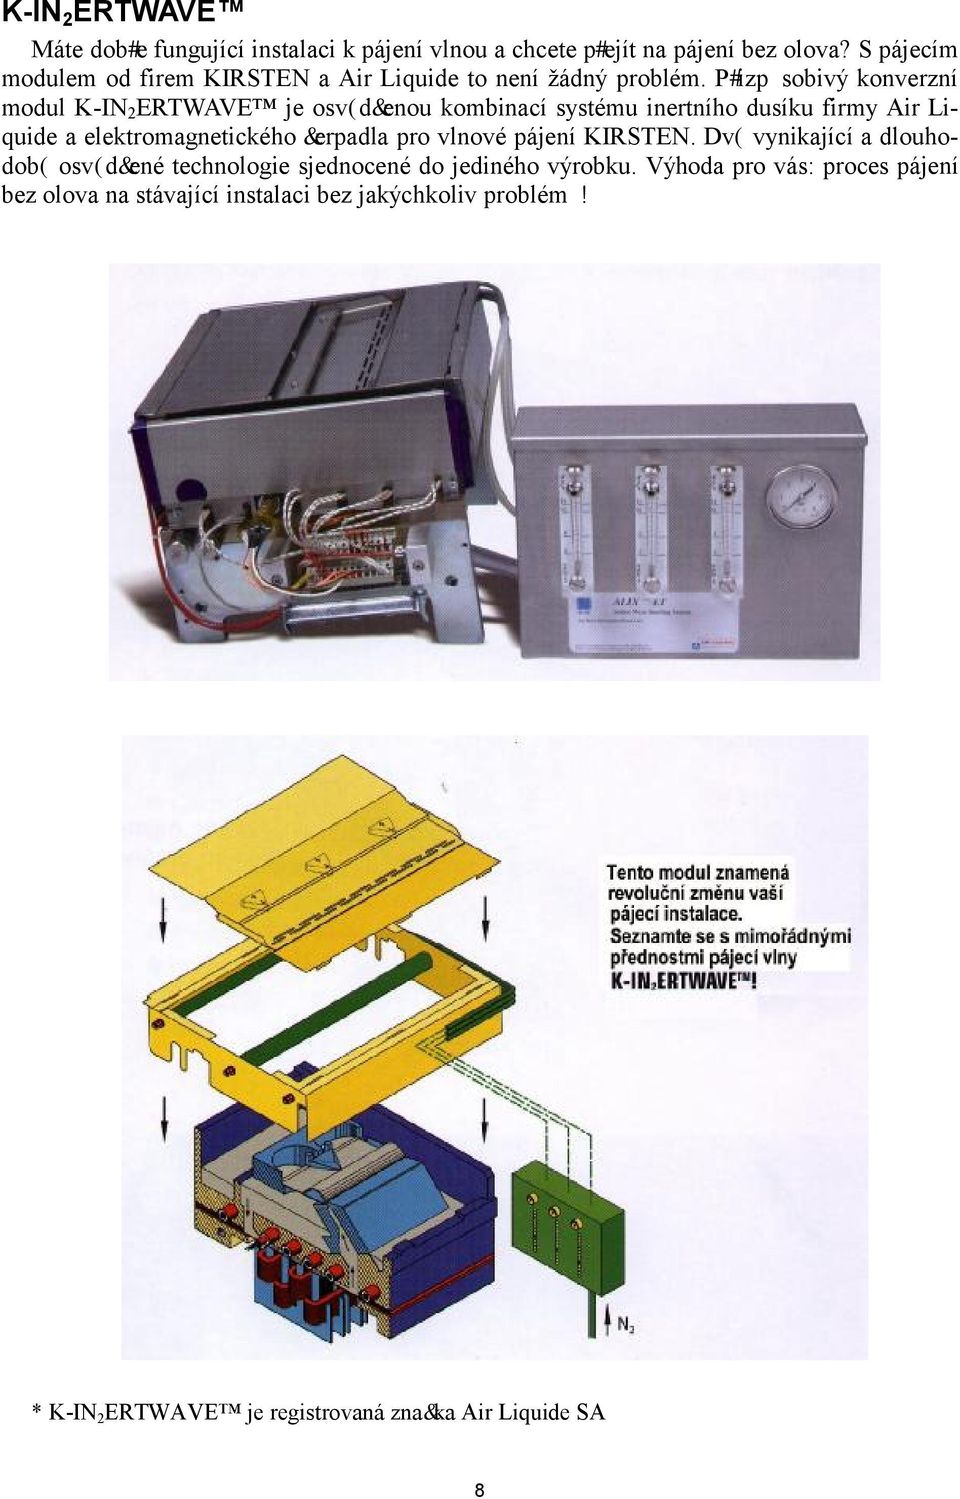 Přizpůsobivý konverzní modul K-IN 2 ERTWAVE je osvědčenou kombinací systému inertního dusíku firmy Air Liuide a elektromagnetického čerpadla